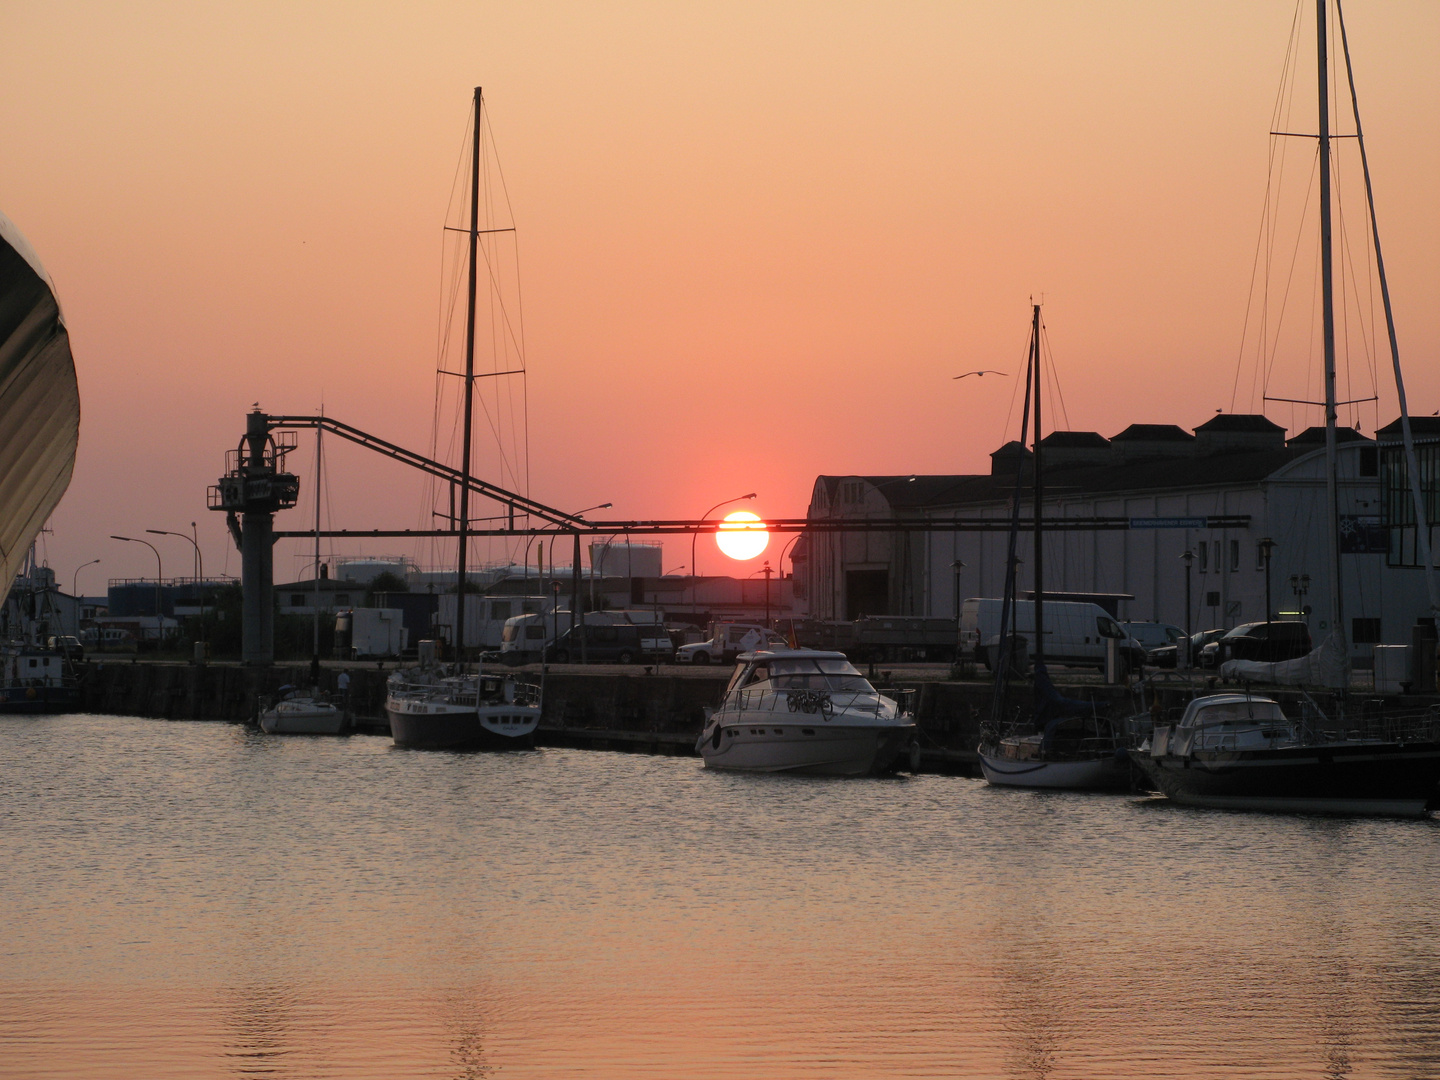 Sonnenuntergang über dem Fischereihafen, Bremerhaven